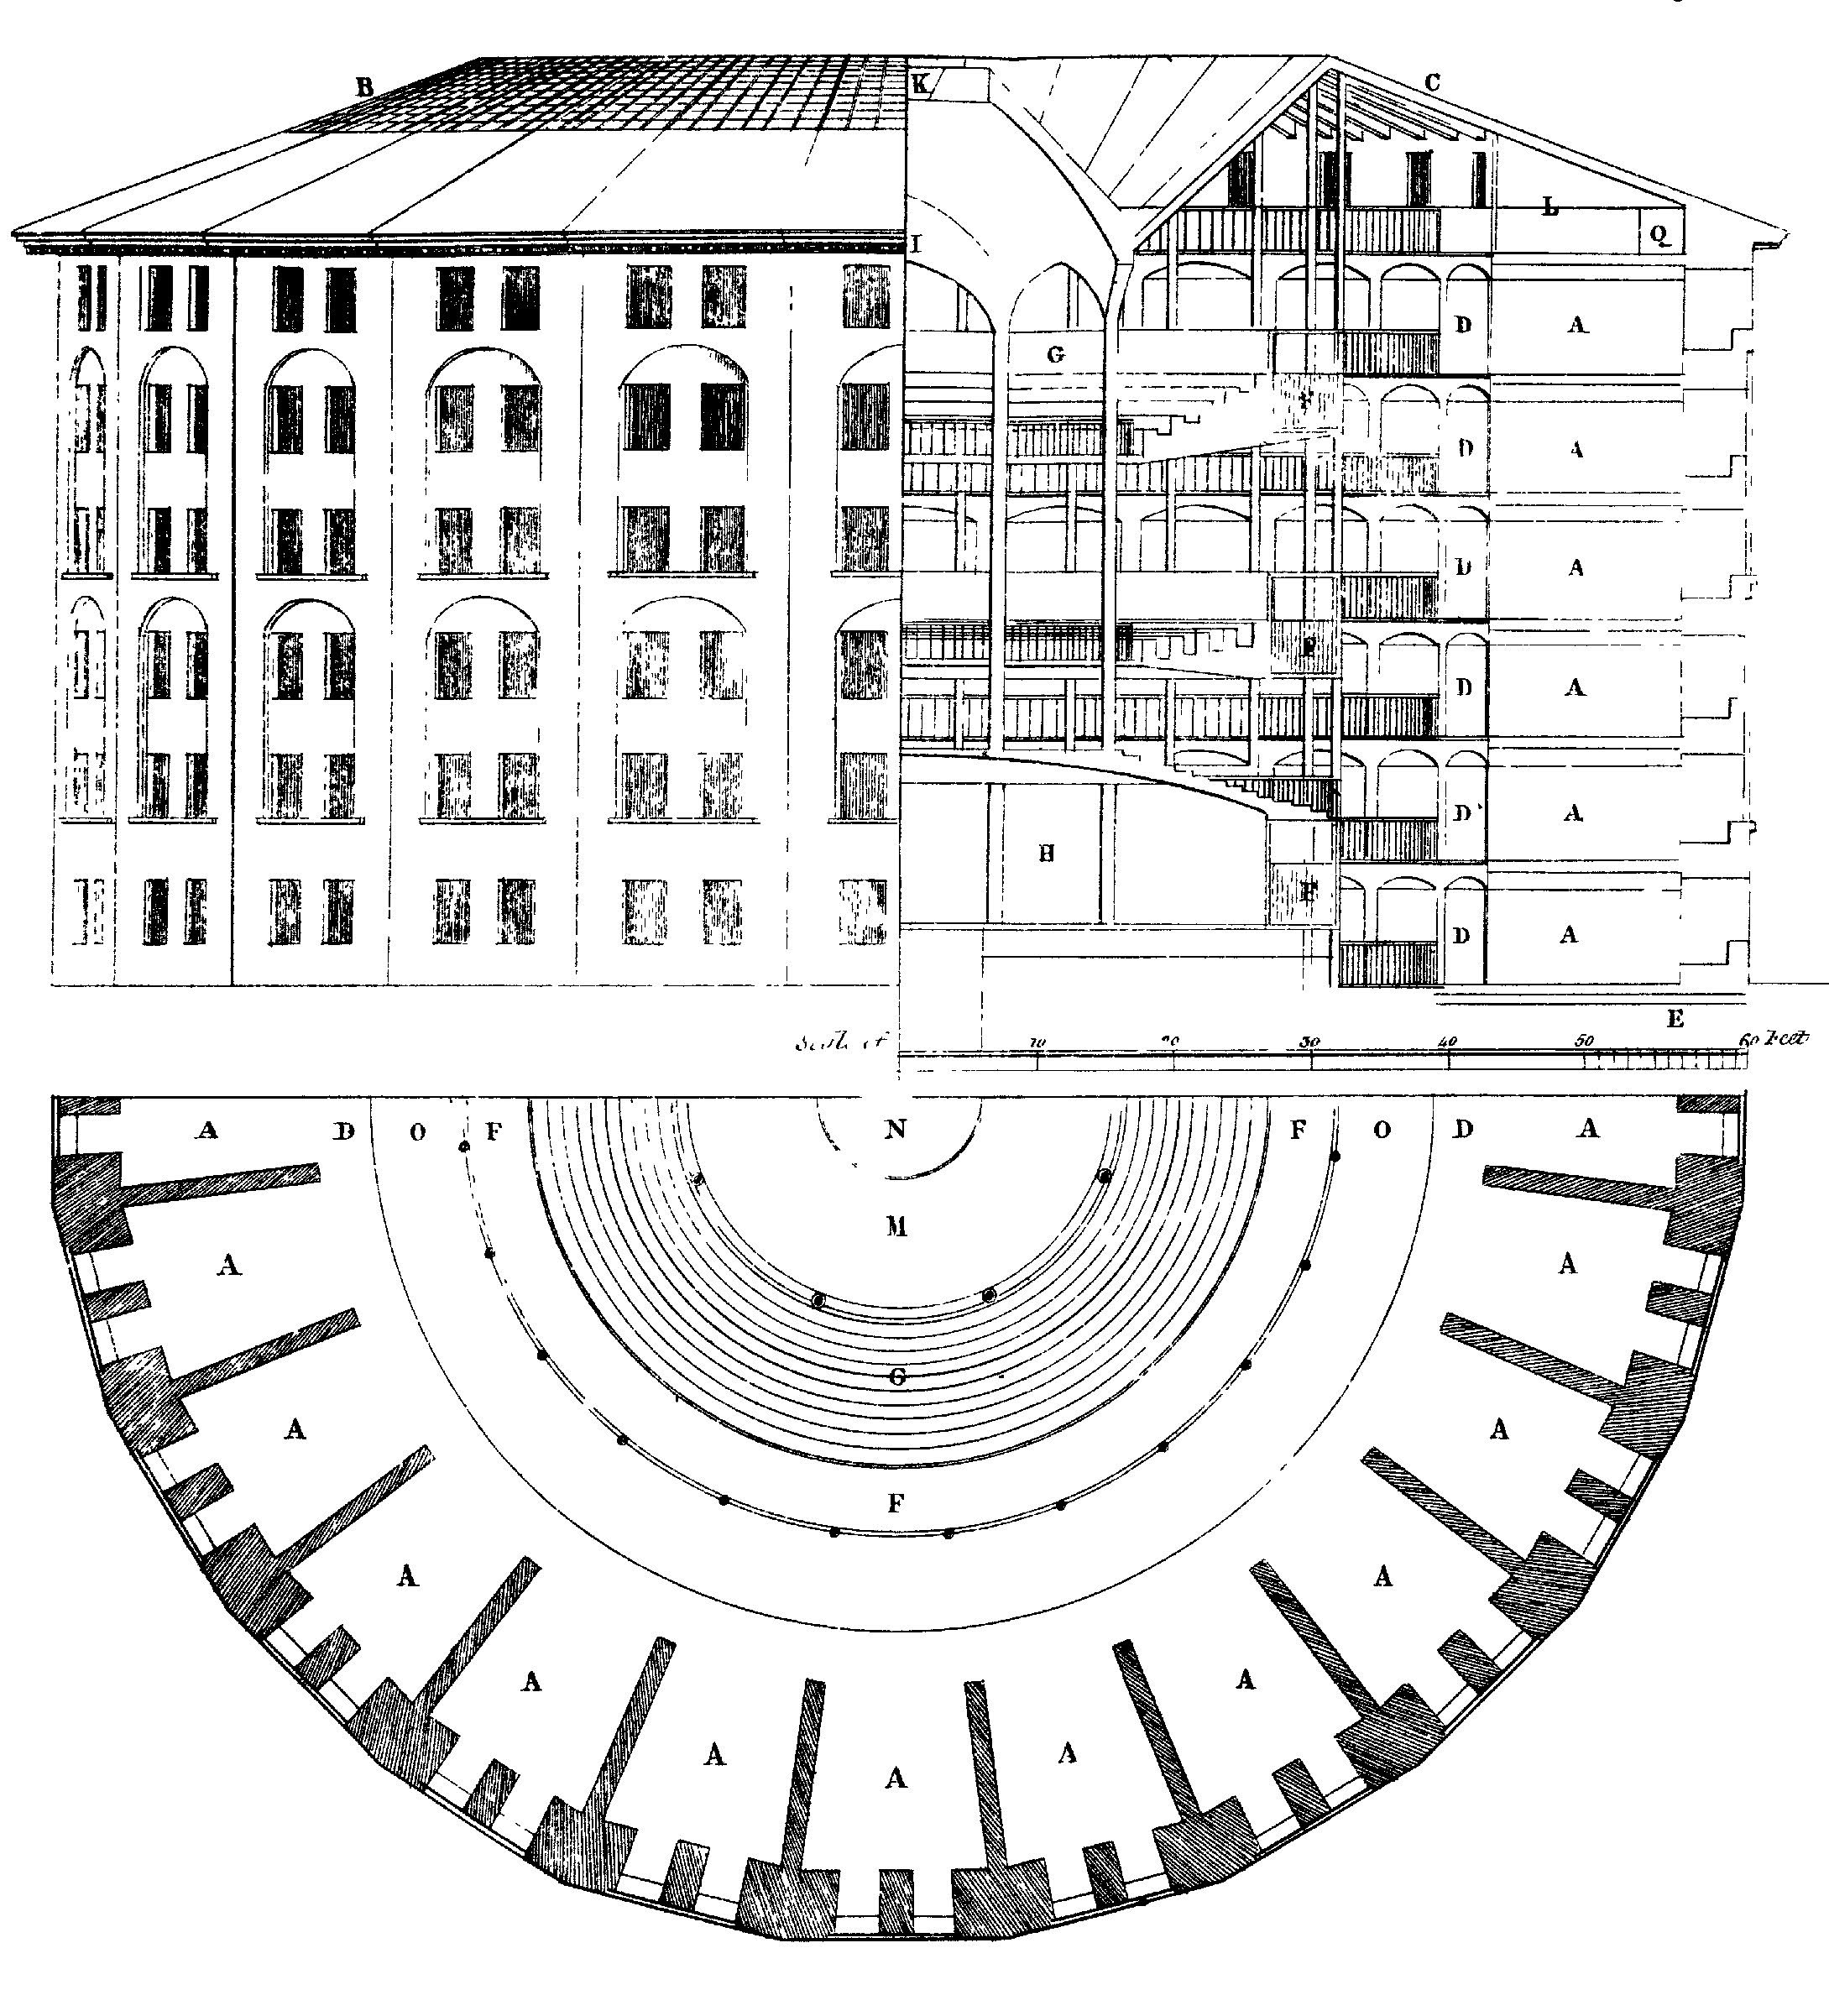 Σχήμα 6.3: Σχέδιο για τη φυλακή panopticon, που προτάθηκε για πρώτη φορά από τον Jeremy Bentham. Στο κέντρο, υπάρχει ένας αόρατος βλέπων που μπορεί να παρατηρήσει τη συμπεριφορά του καθενός αλλά δεν μπορεί να τη δει. Σχέδιο από τον Willey Reveley, 1791 (Πηγή: Wikimedia Commons).